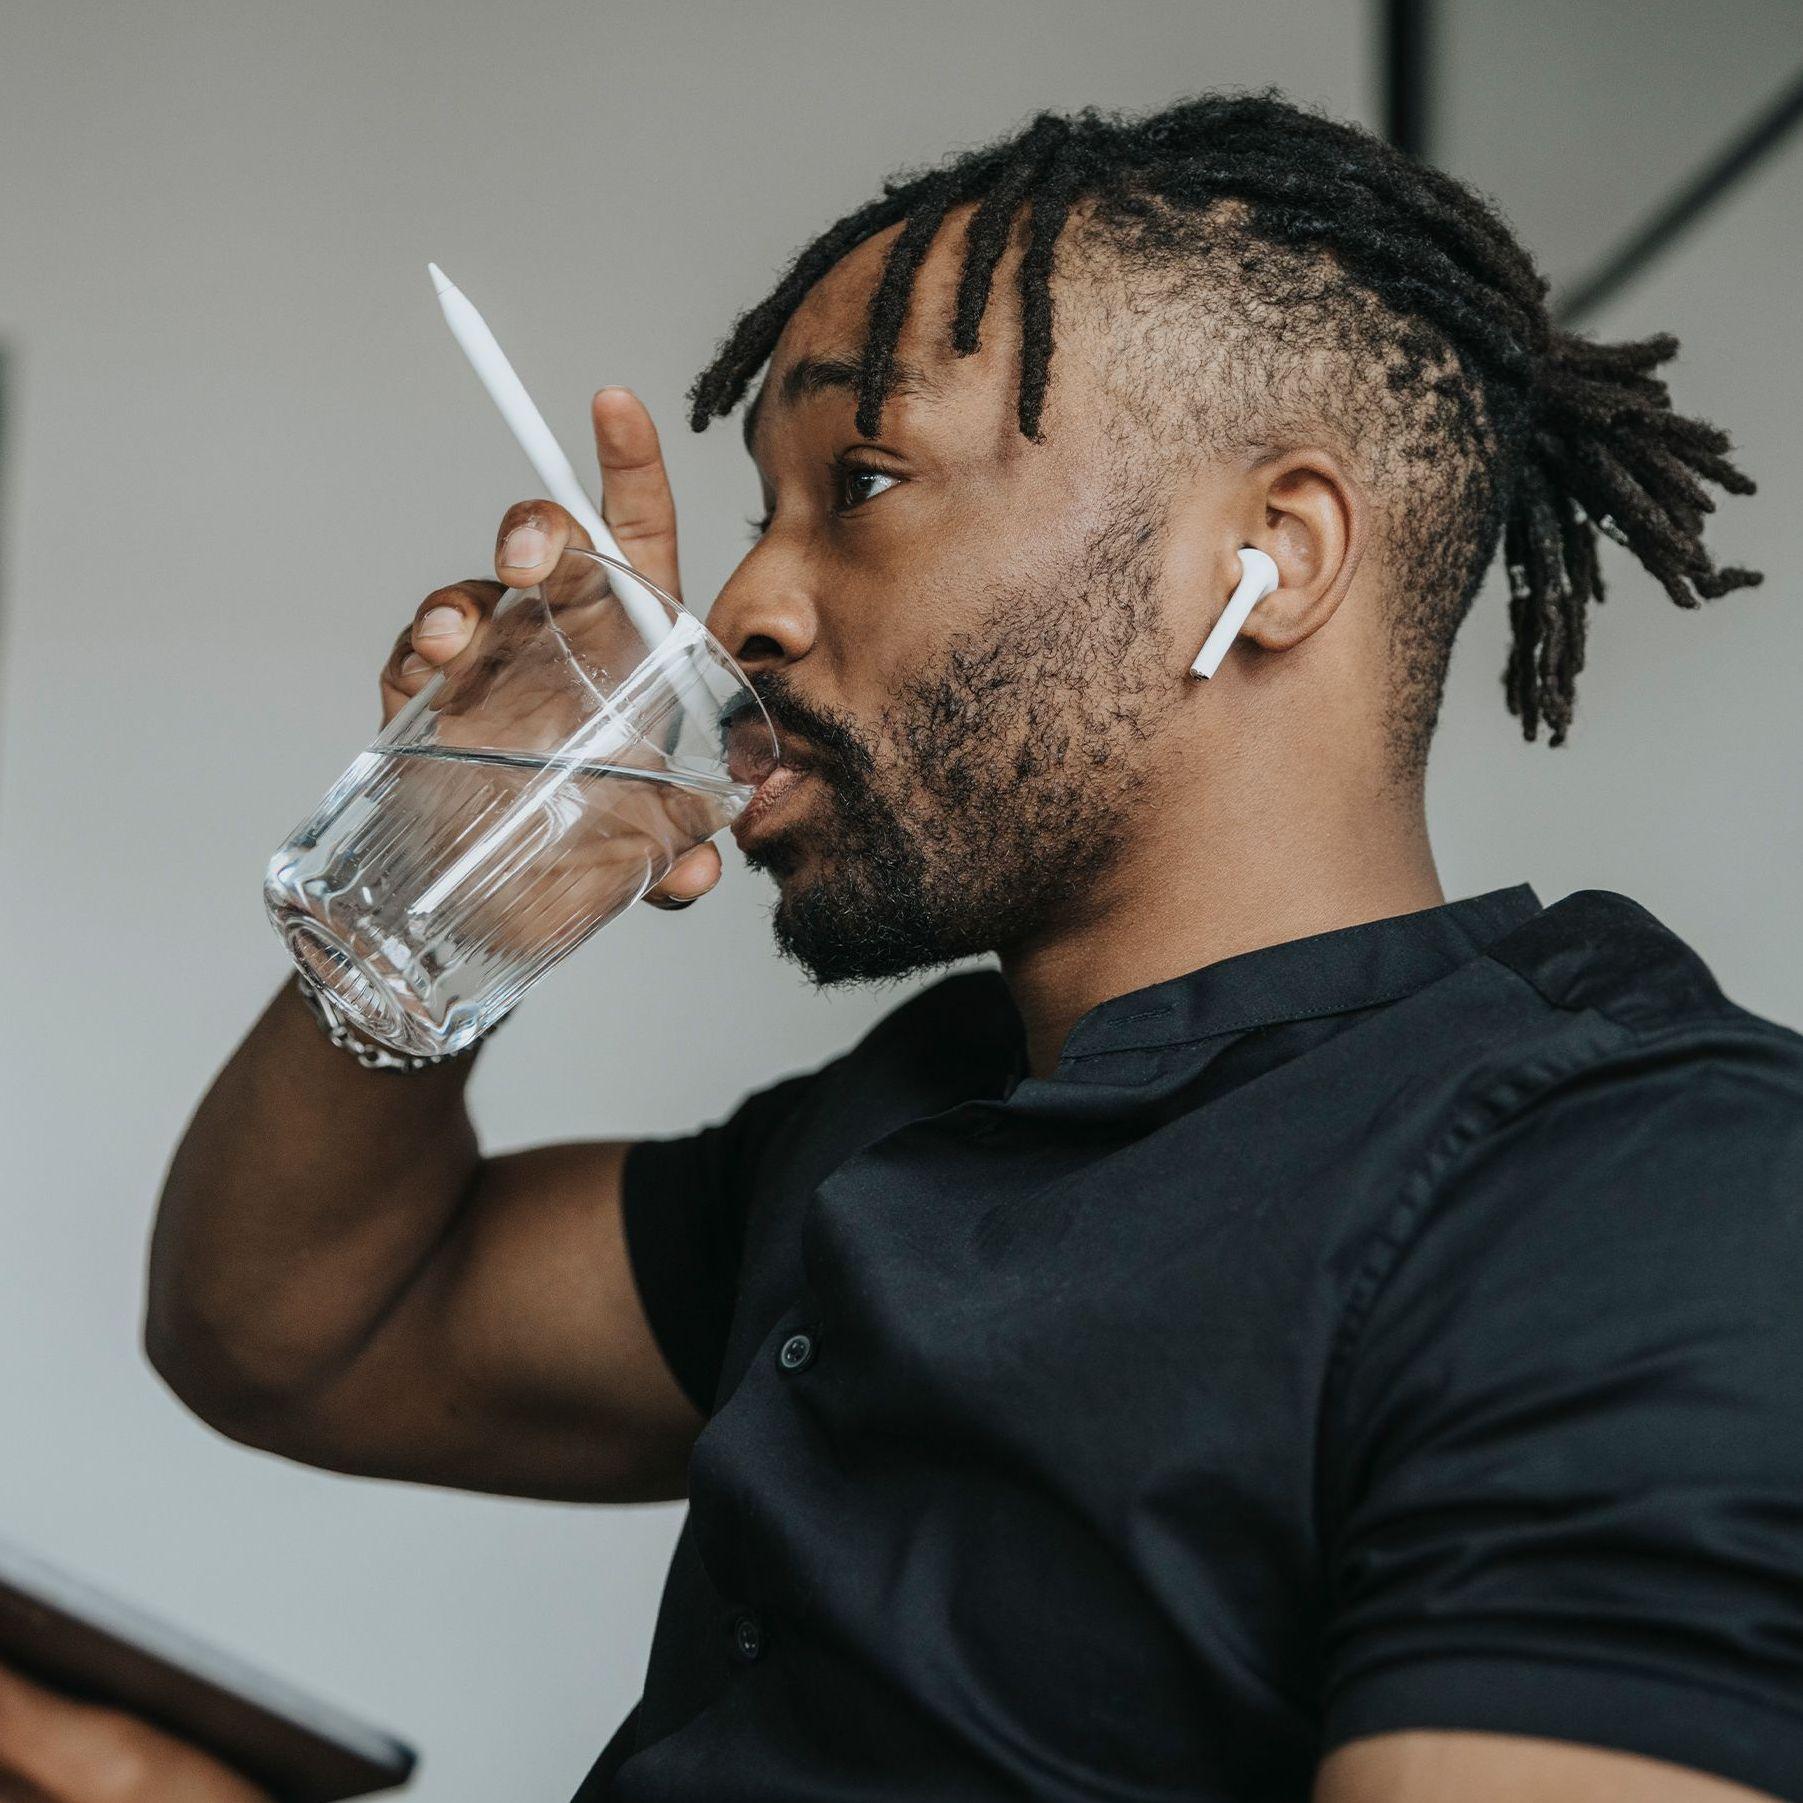 Ein junger Mann in einem kurzärmeligen T-Shirt trinkt im Büro aus einem Glas Wasser während er ein Tablet mit Stift in der Hand hält.